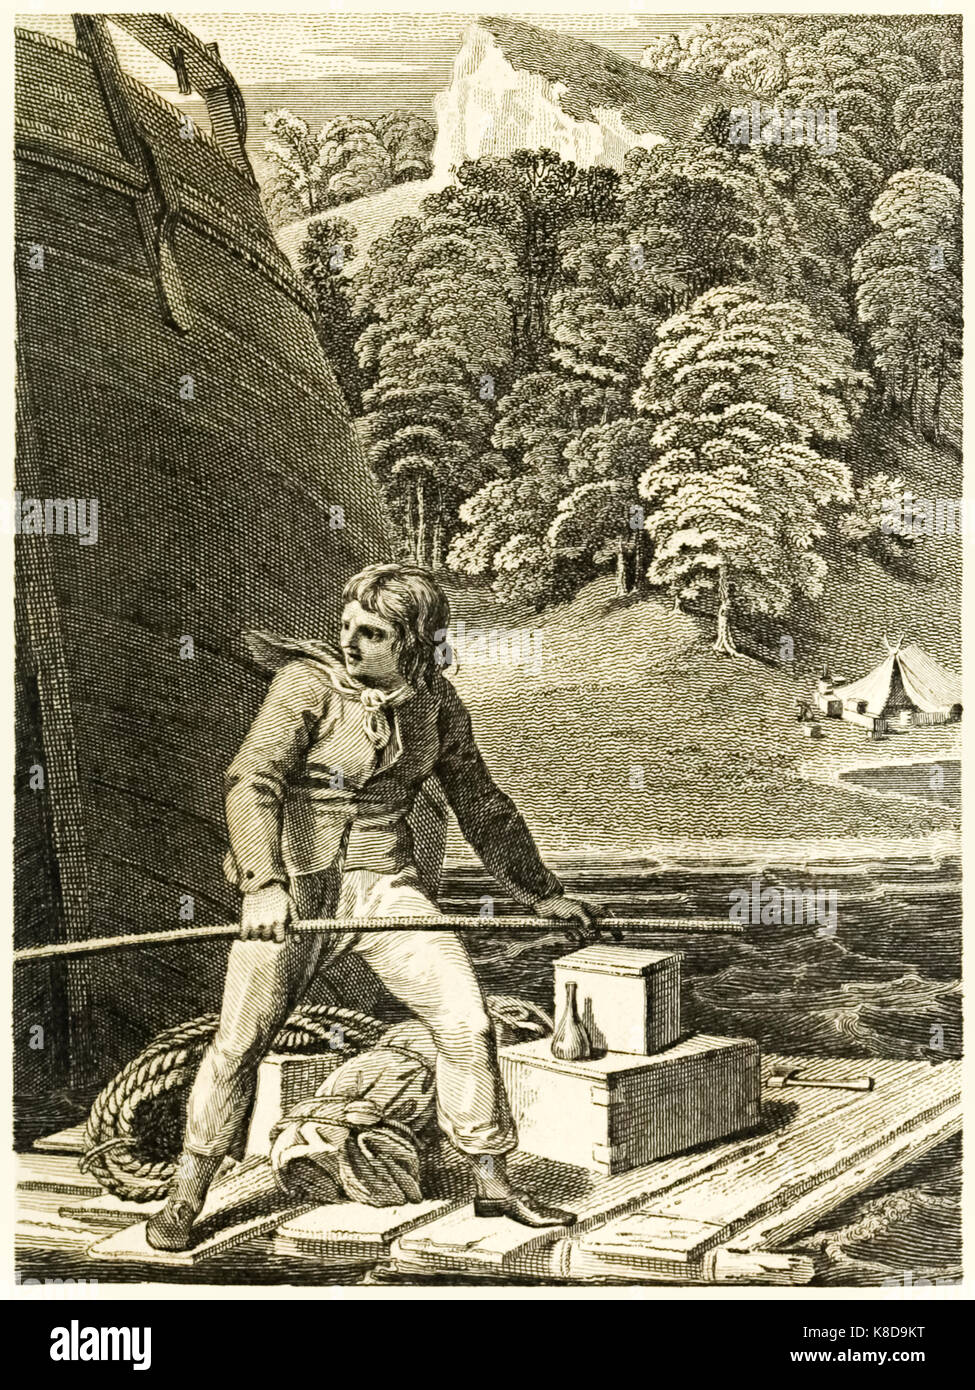 "Robinson Crusoe sulla sua zattera" da "La vita e le strane sorprendenti avventure di Robinson Crusoe, o York, Mariner" di Daniel Defoe (1660-1731). Illustrazione di Thomas Stothard (1755-1834) incisione di Thomas Medland (1765-1833). Vedere ulteriori informazioni qui di seguito Foto Stock